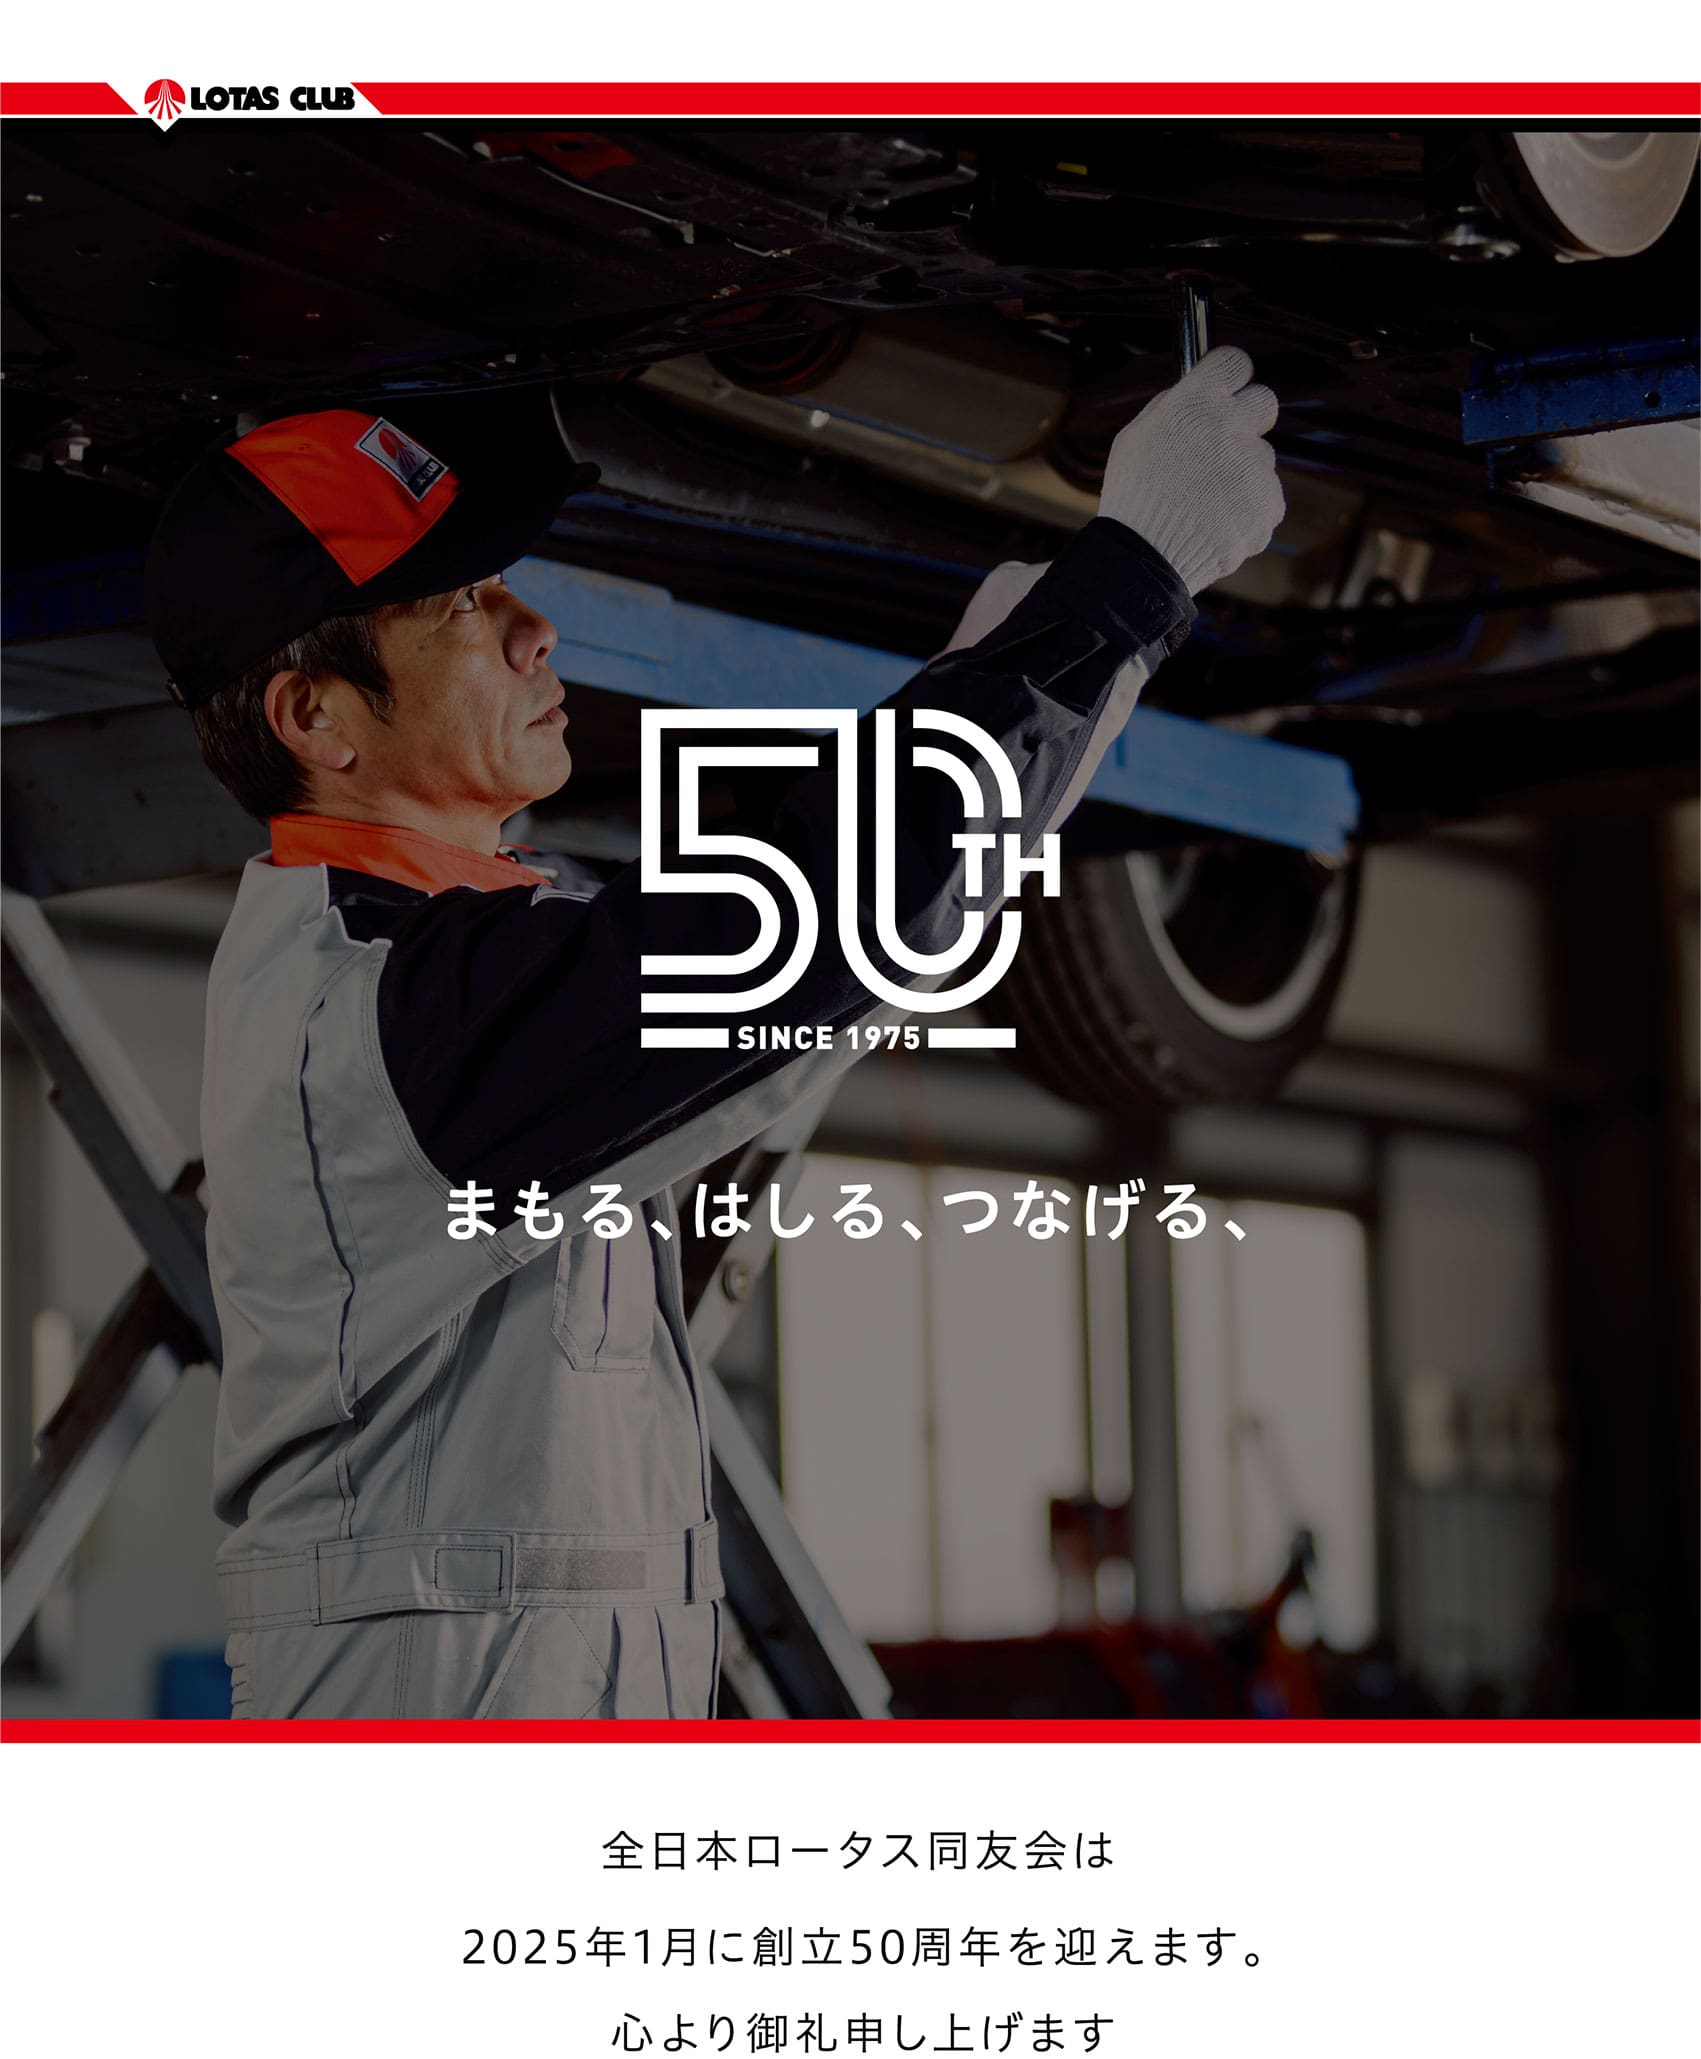 全日本ロータスクラブ同友会は2025年1月に創立50周年を迎えます。心より御礼申し上げます